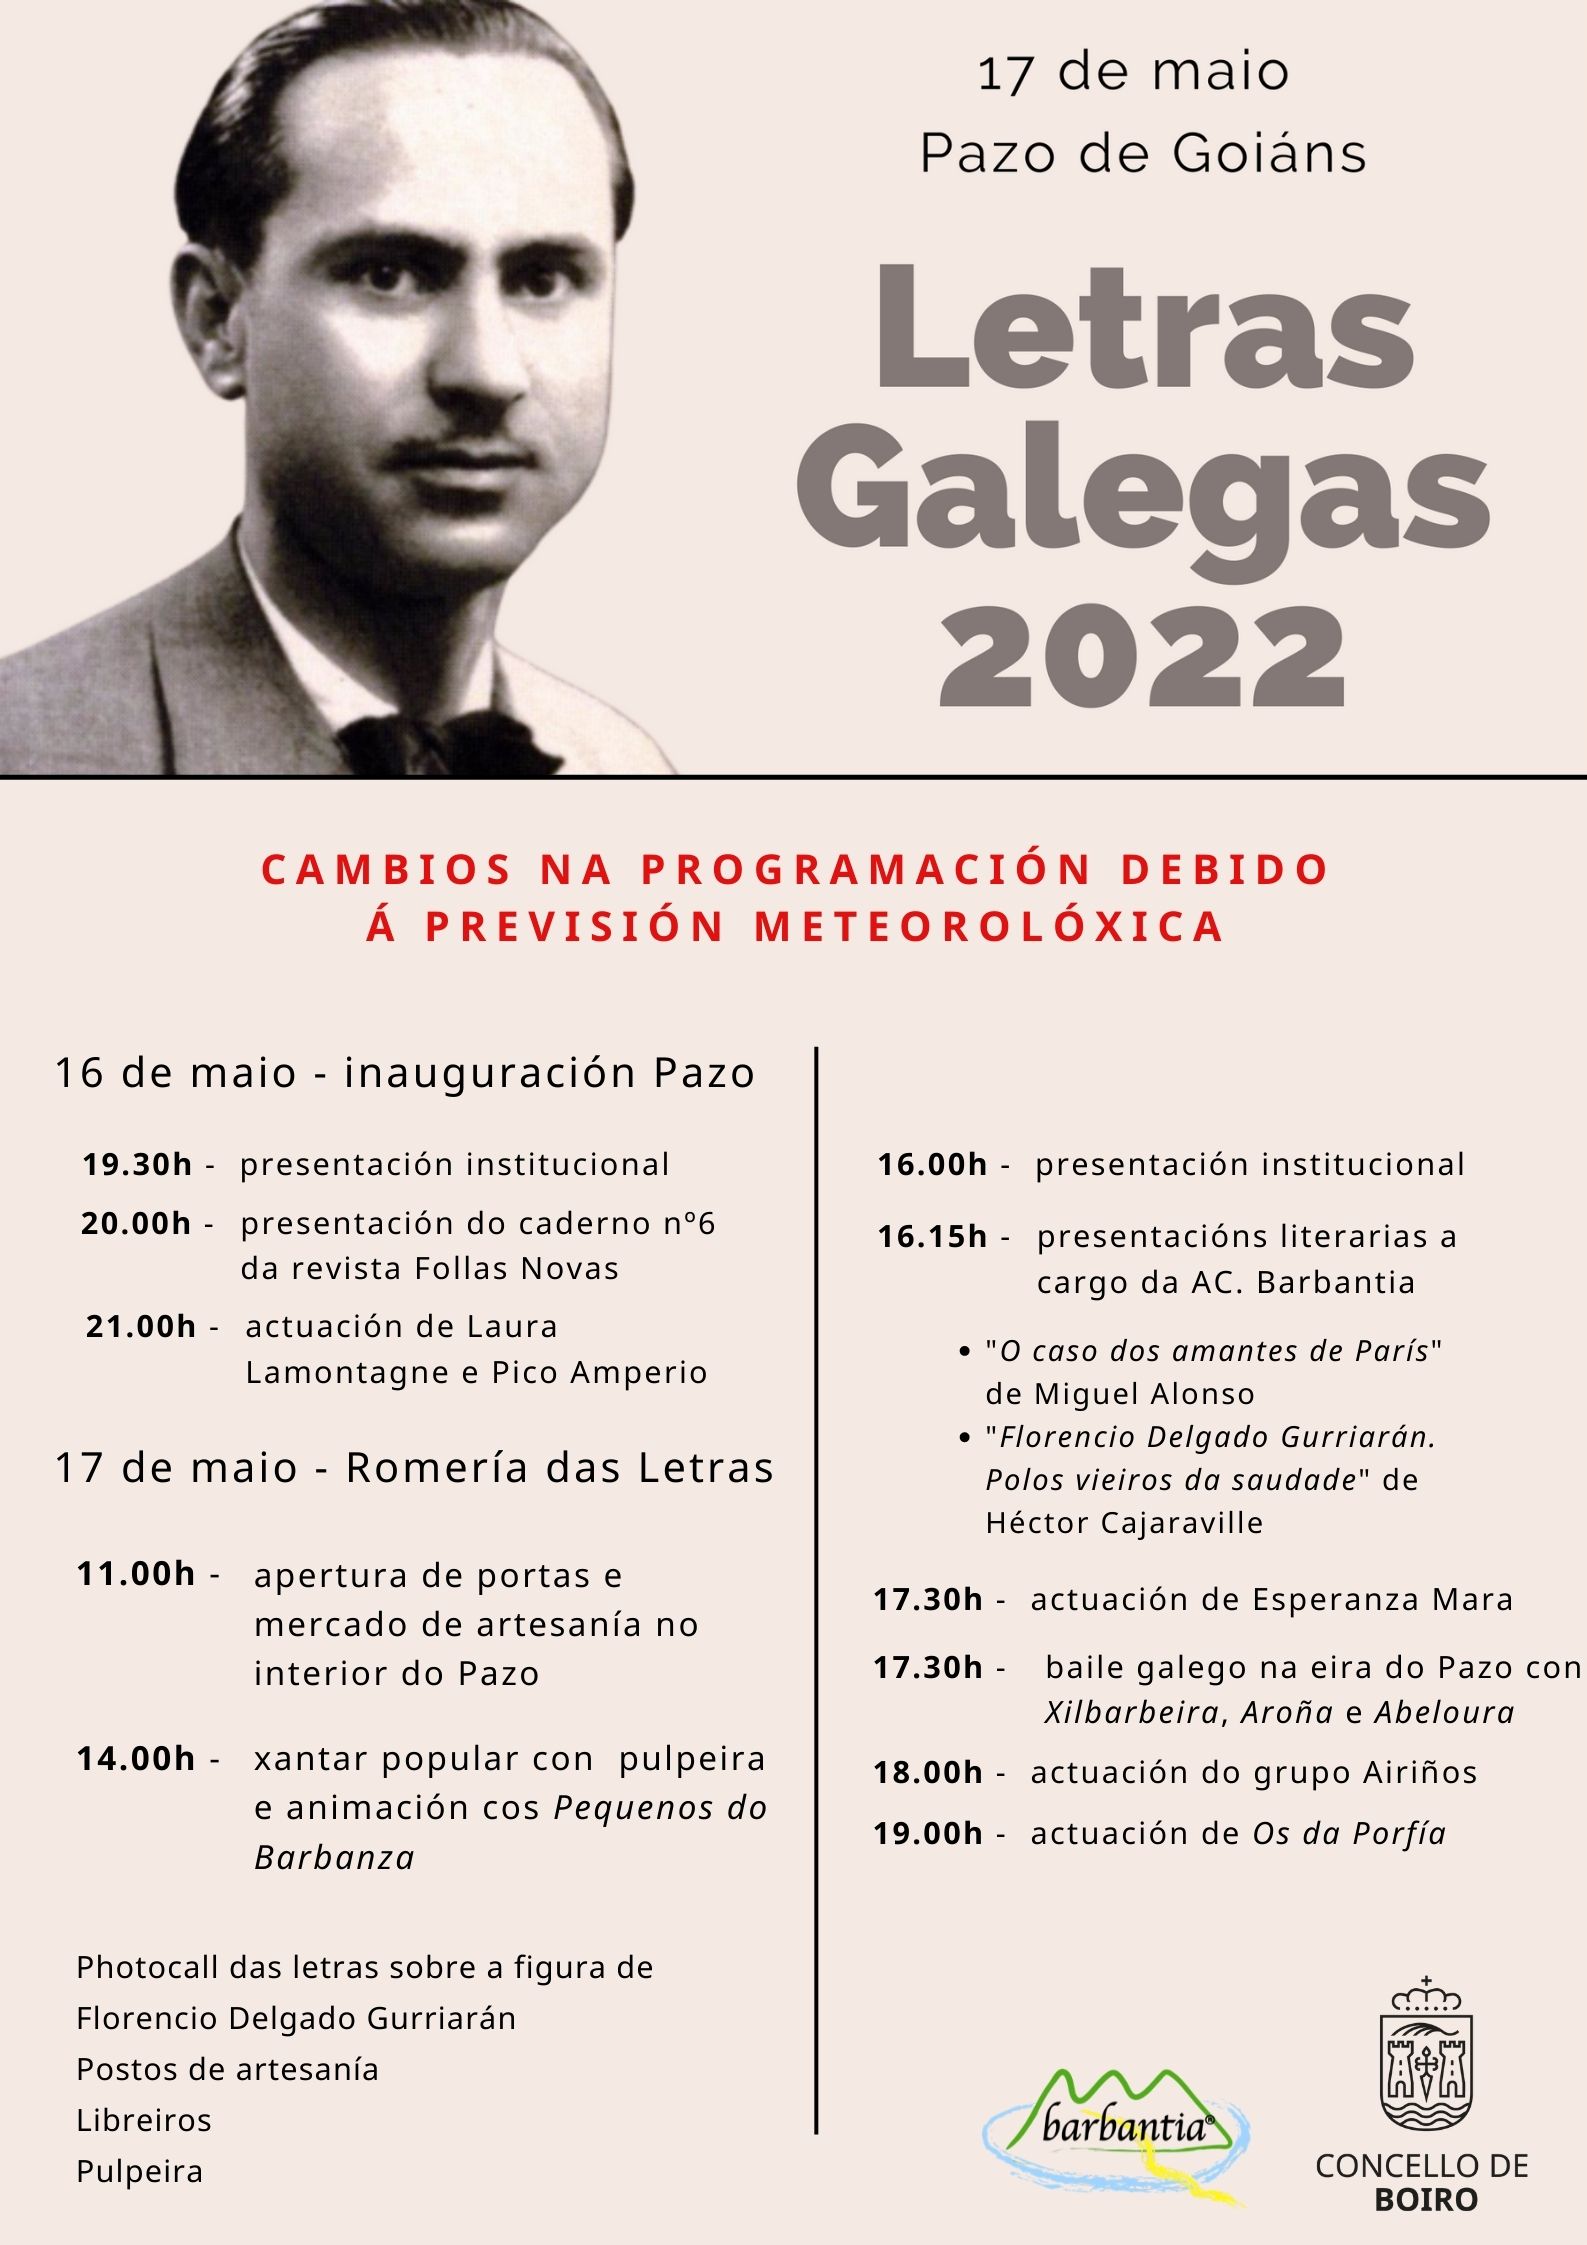 Cambios programación Letras Galegas 2022 | Concello de Boiro 